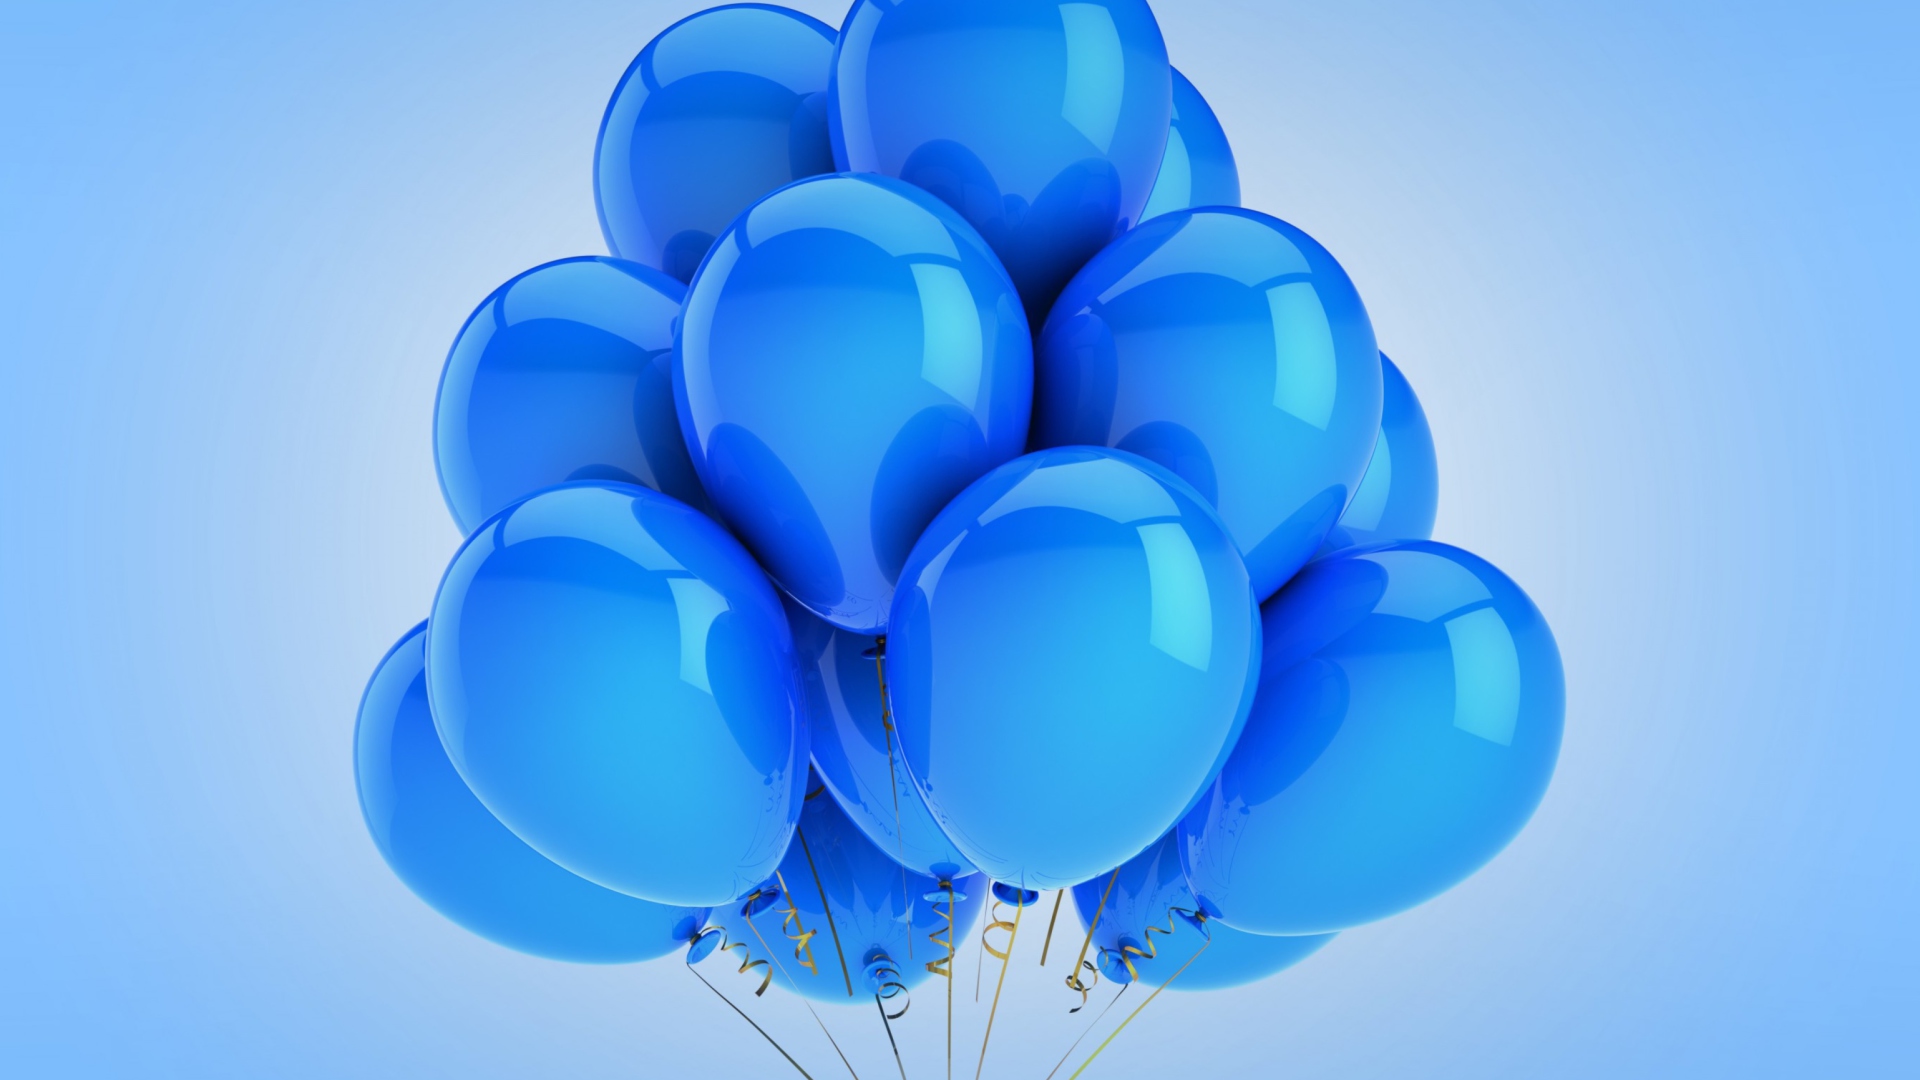 Blue Balloons wallpaper 1920x1080